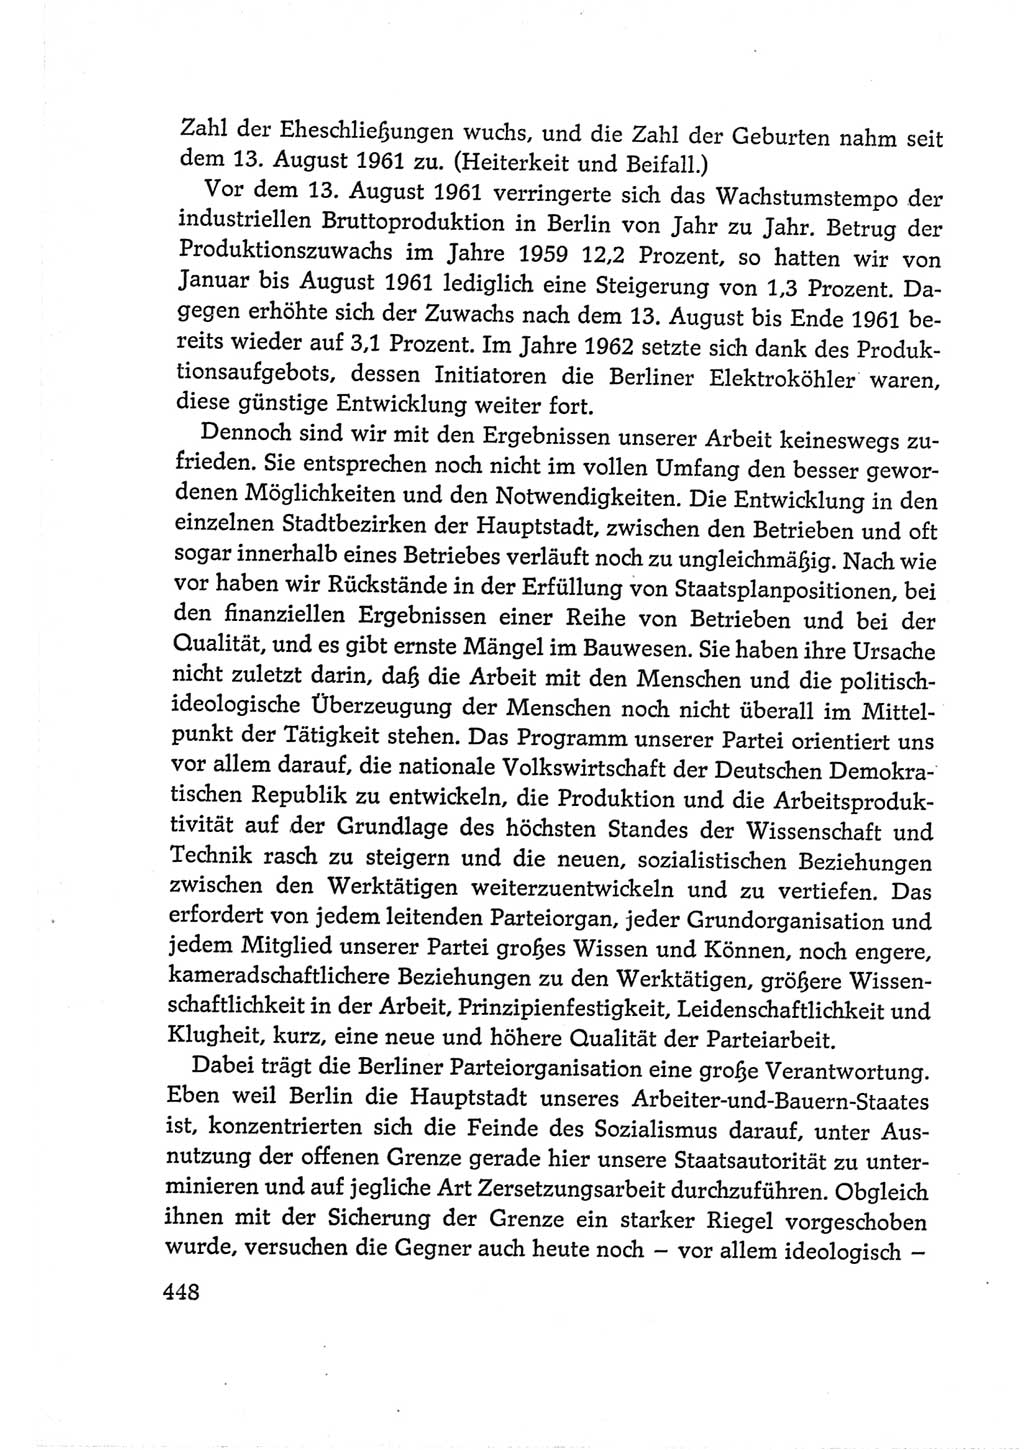 Protokoll der Verhandlungen des Ⅵ. Parteitages der Sozialistischen Einheitspartei Deutschlands (SED) [Deutsche Demokratische Republik (DDR)] 1963, Band Ⅰ, Seite 448 (Prot. Verh. Ⅵ. PT SED DDR 1963, Bd. Ⅰ, S. 448)